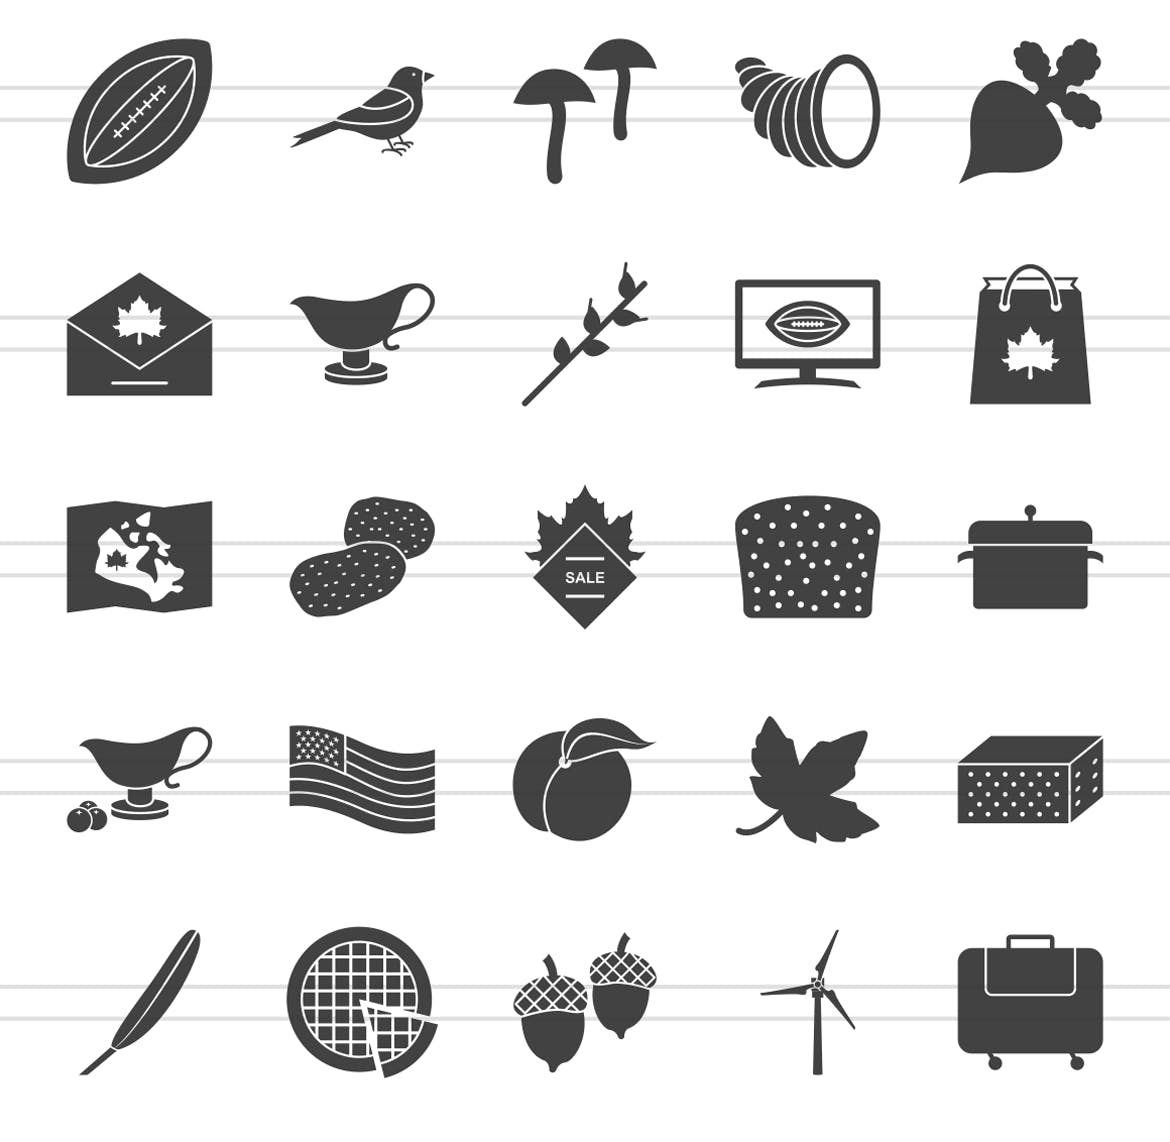 50枚感恩节主题矢量字体蚂蚁素材精选图标 50 Thanksgiving Glyph Icons插图(2)